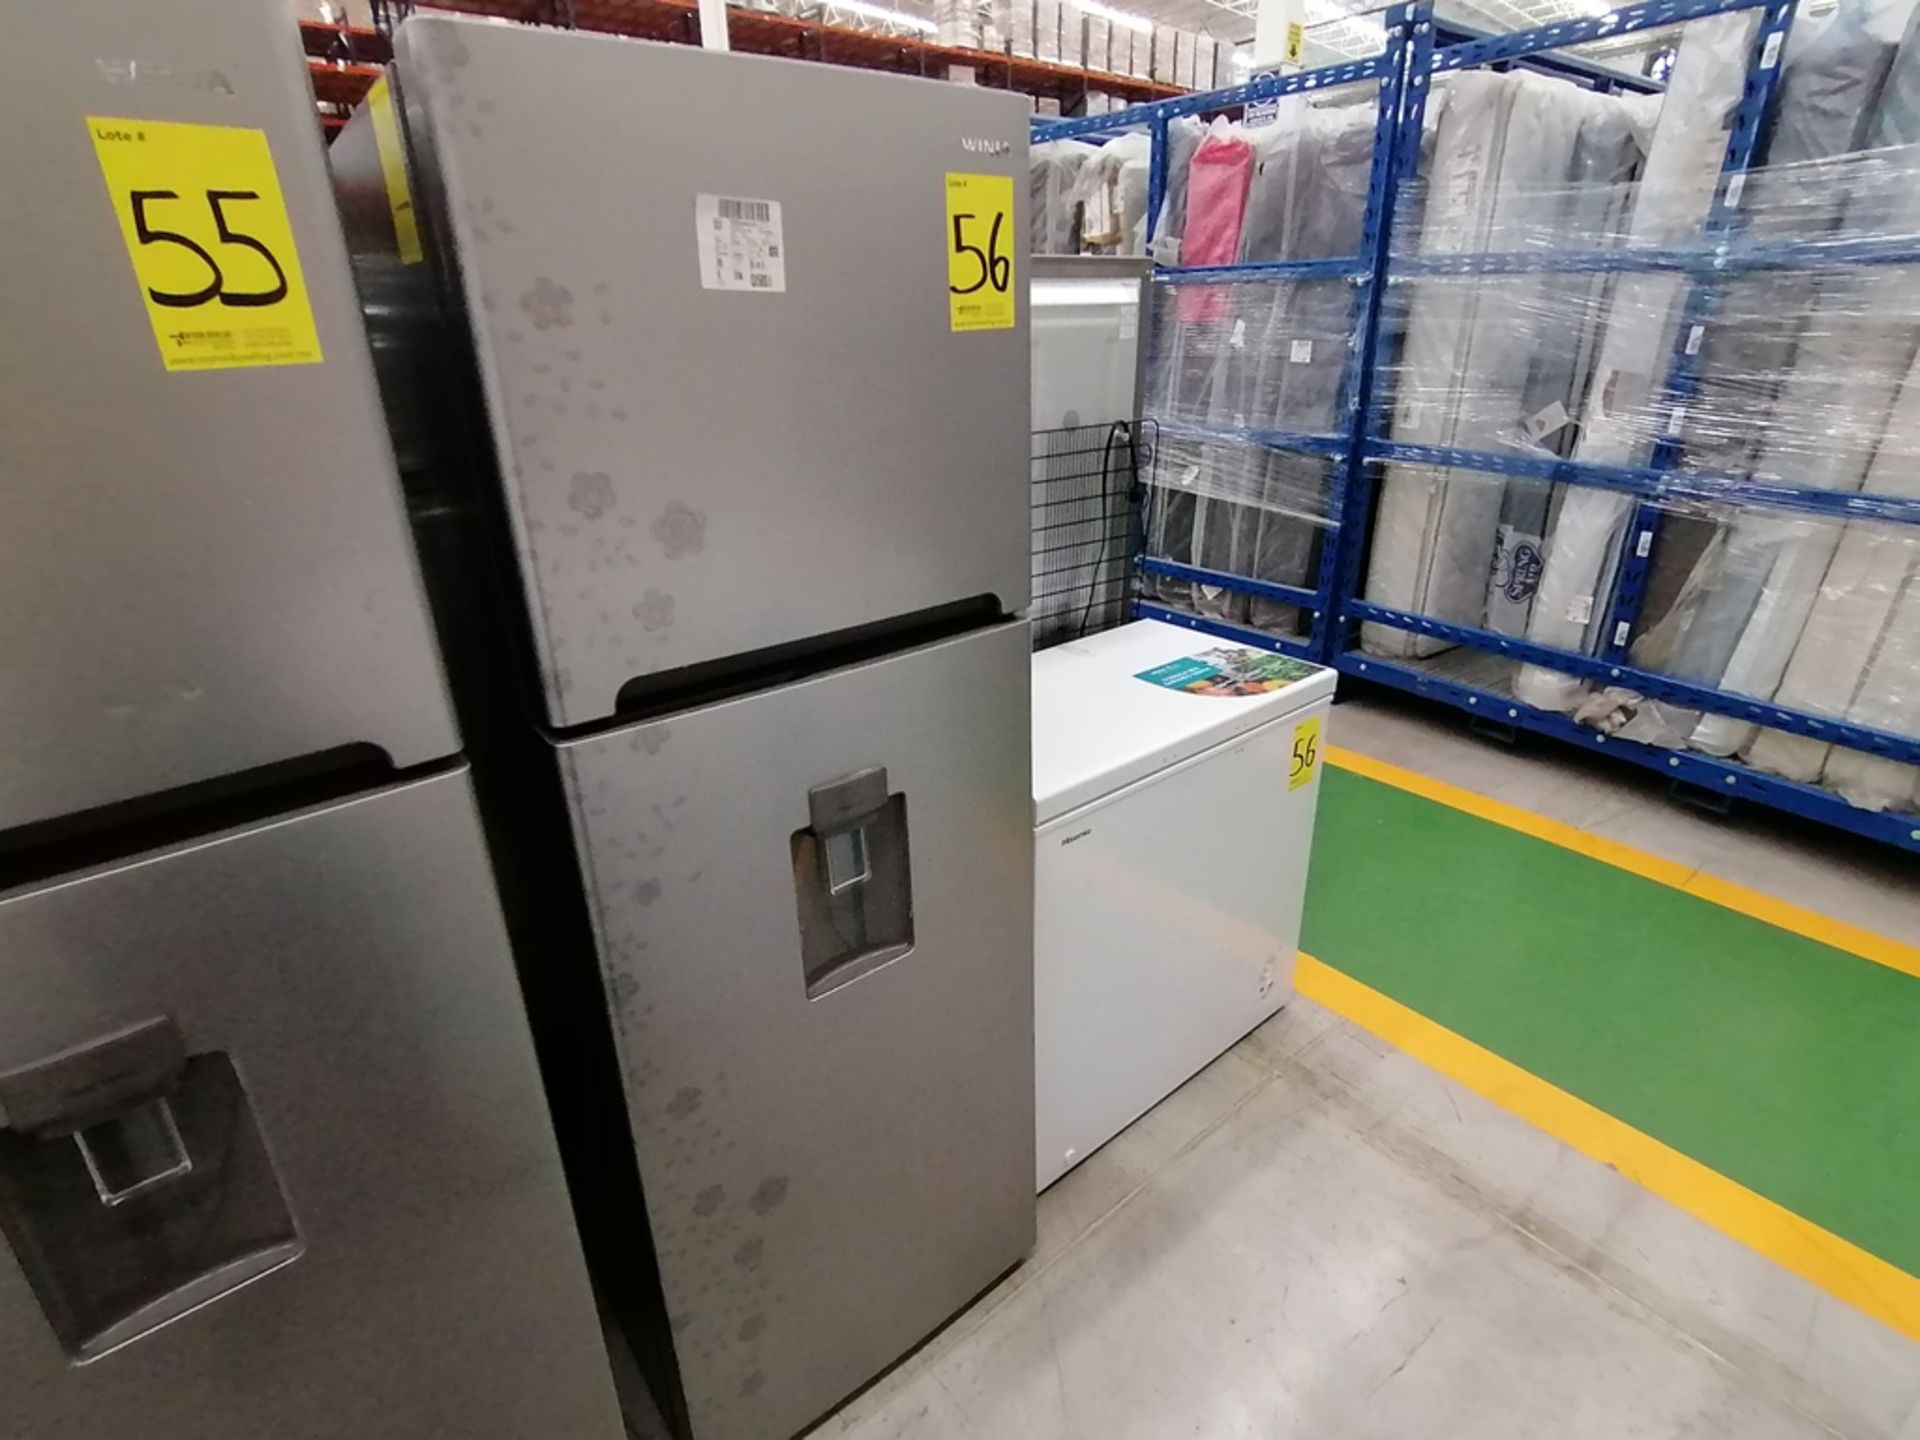 Lote de 2 refrigeradores incluye: 1 Refrigerador con dispensador de agua, Marca Winia, Modelo DFR40 - Image 2 of 17